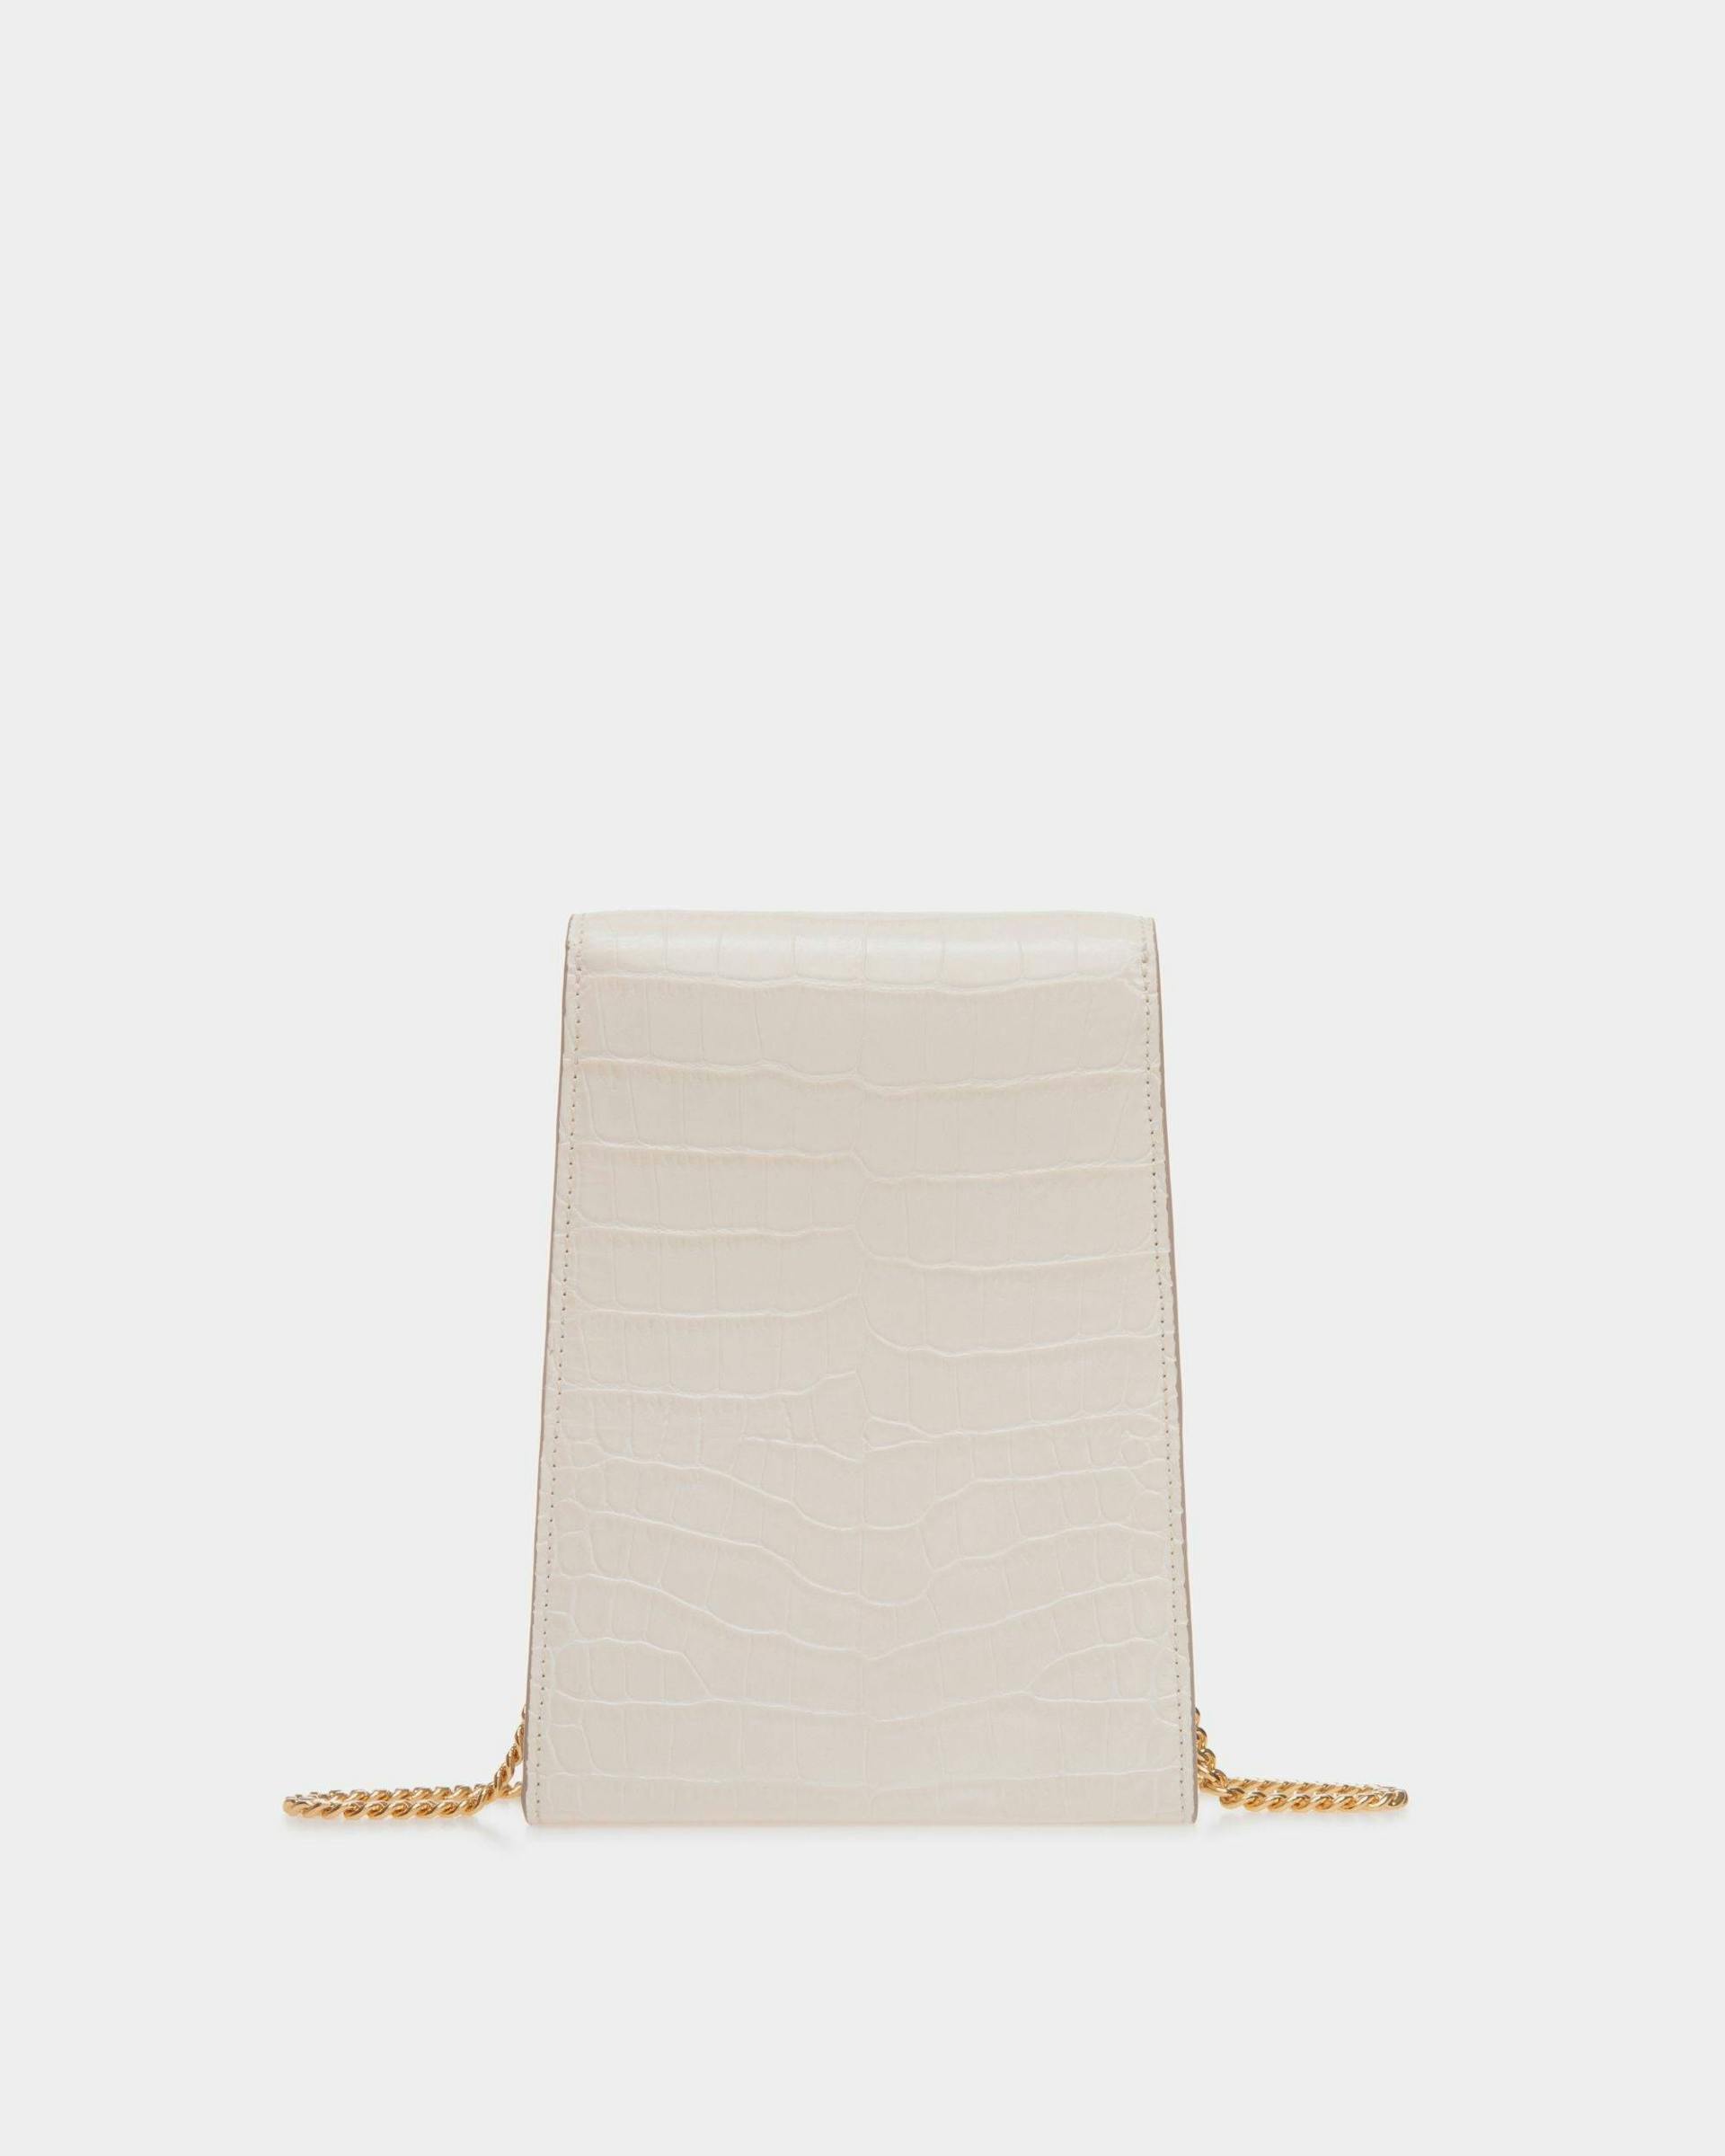 Women's Tilt Phone Bag in White Crocodile Print Leather | Bally | Still Life Back